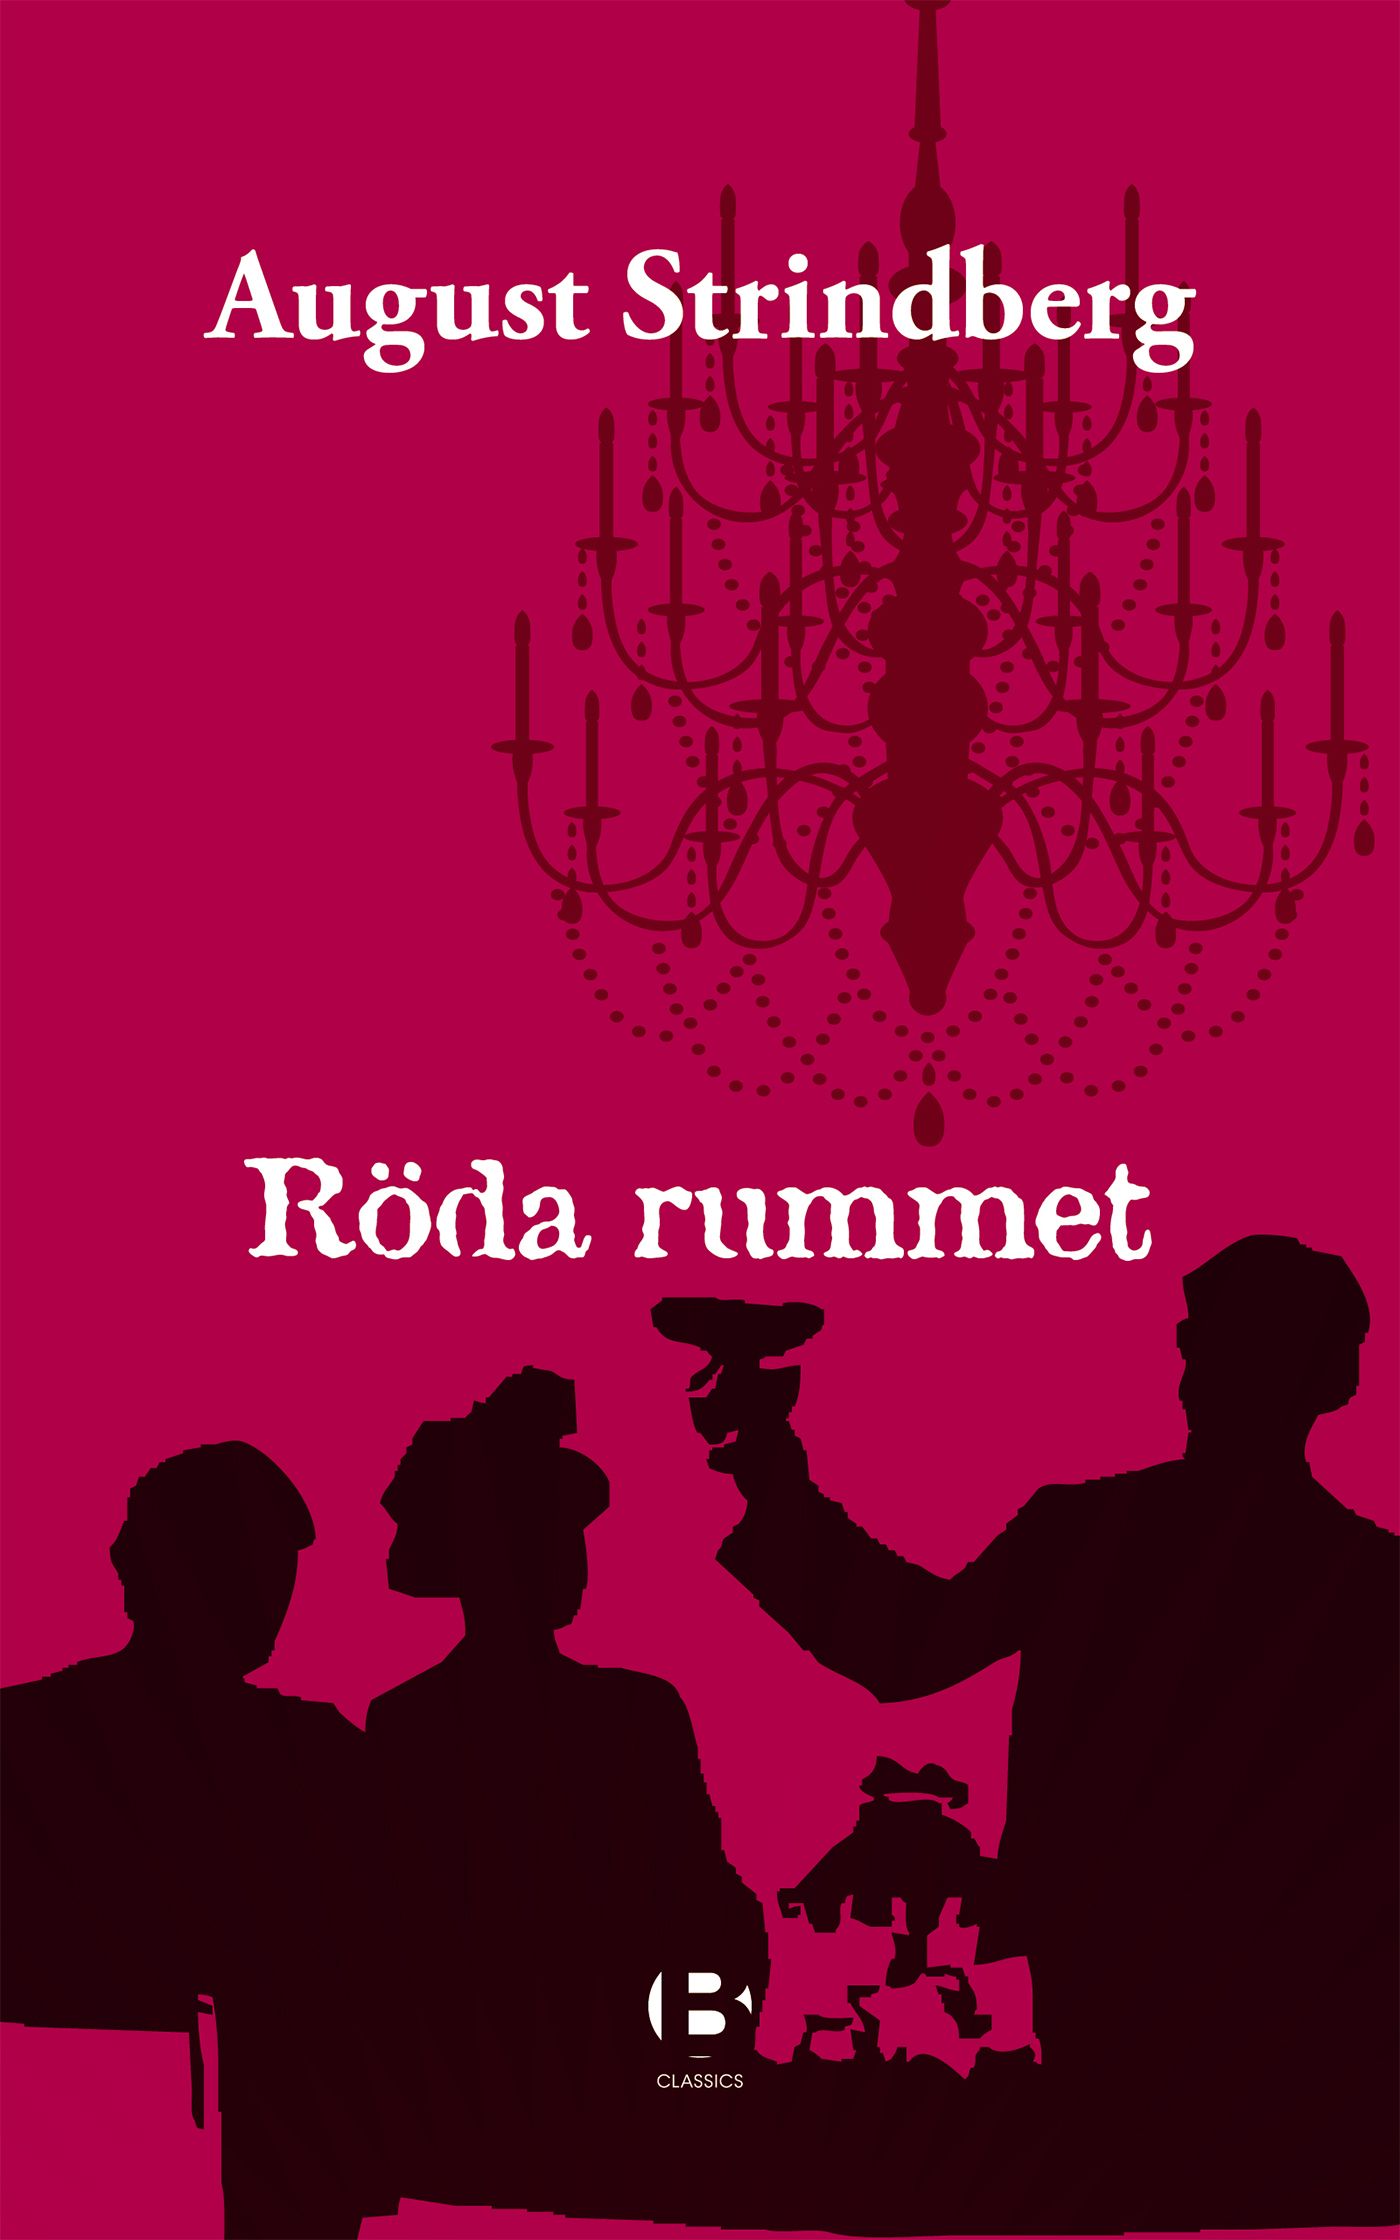 Röda rummet, eBook by August Strindberg